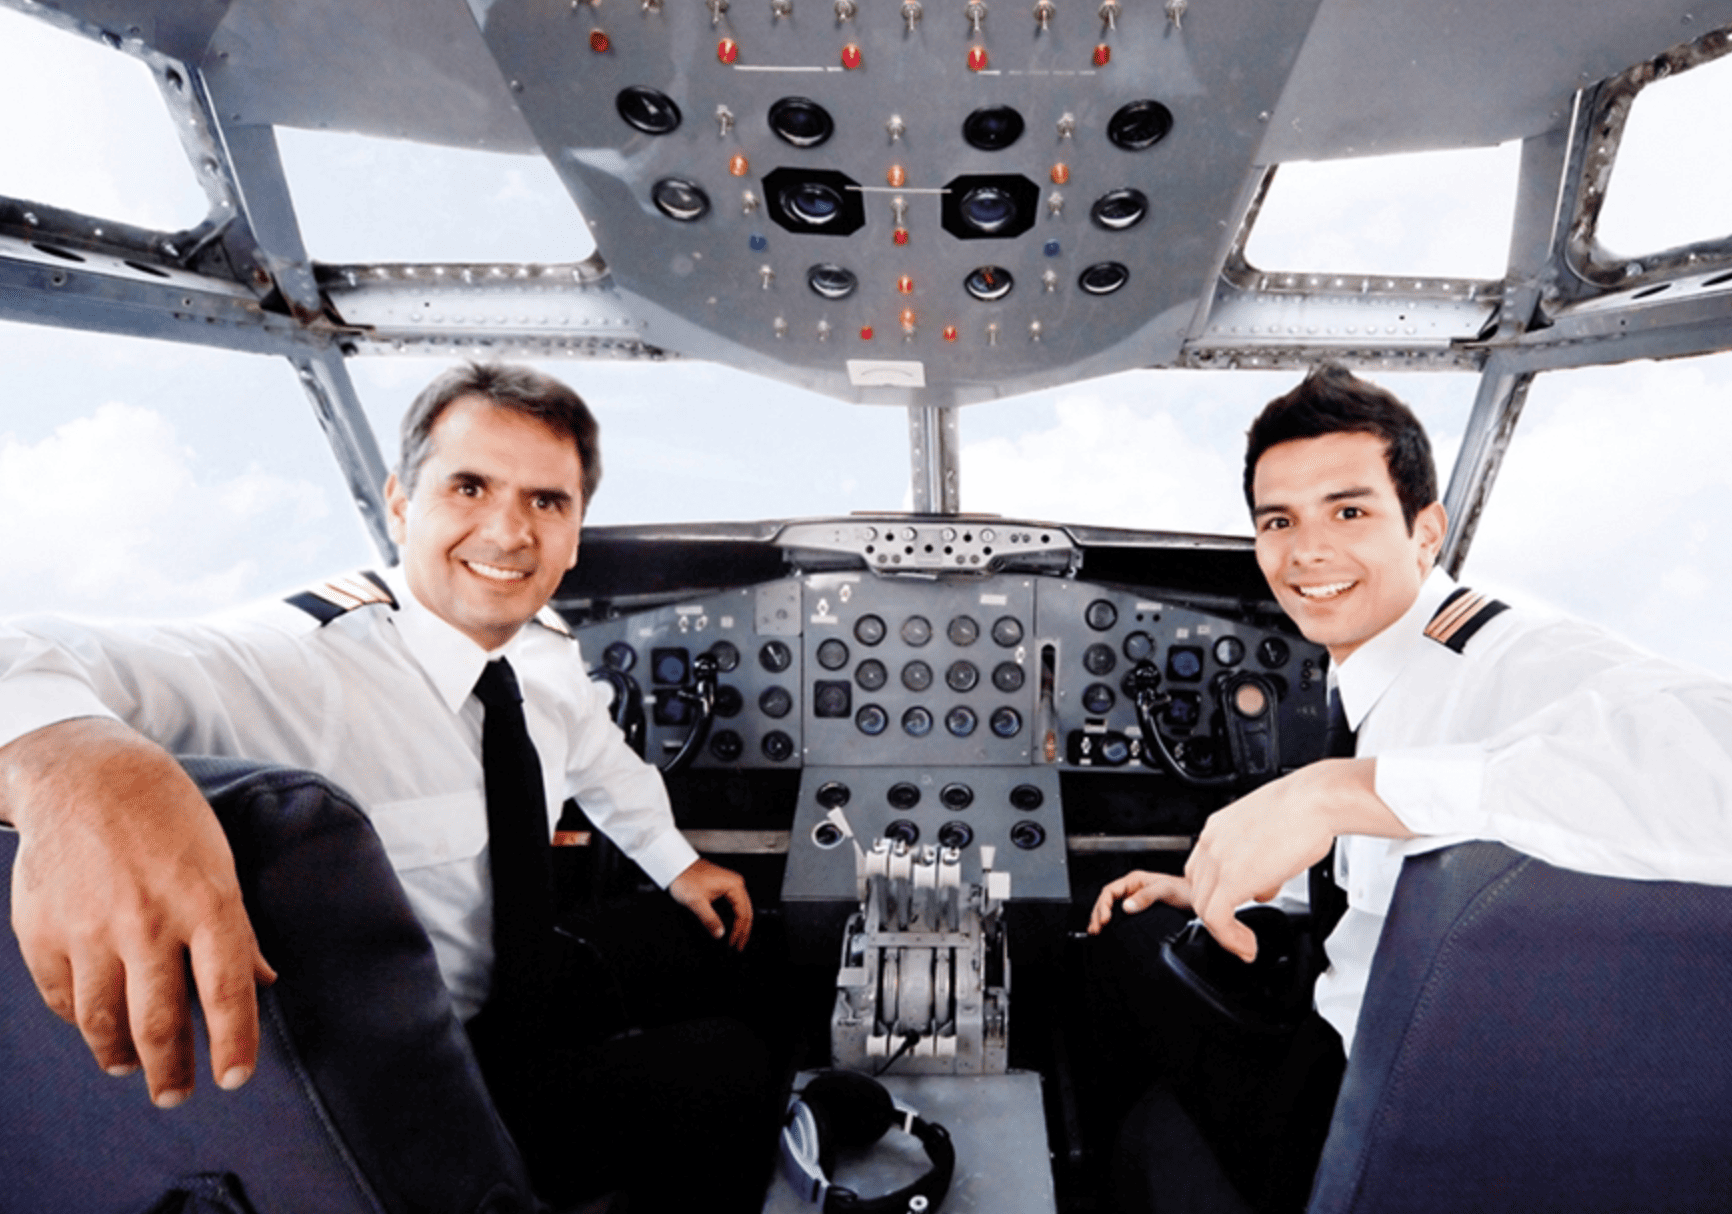 Hàng không thế giới được dự báo sẽ thiếu nhiều phi công trong tương lai. Ảnh: Spectrum Aviation